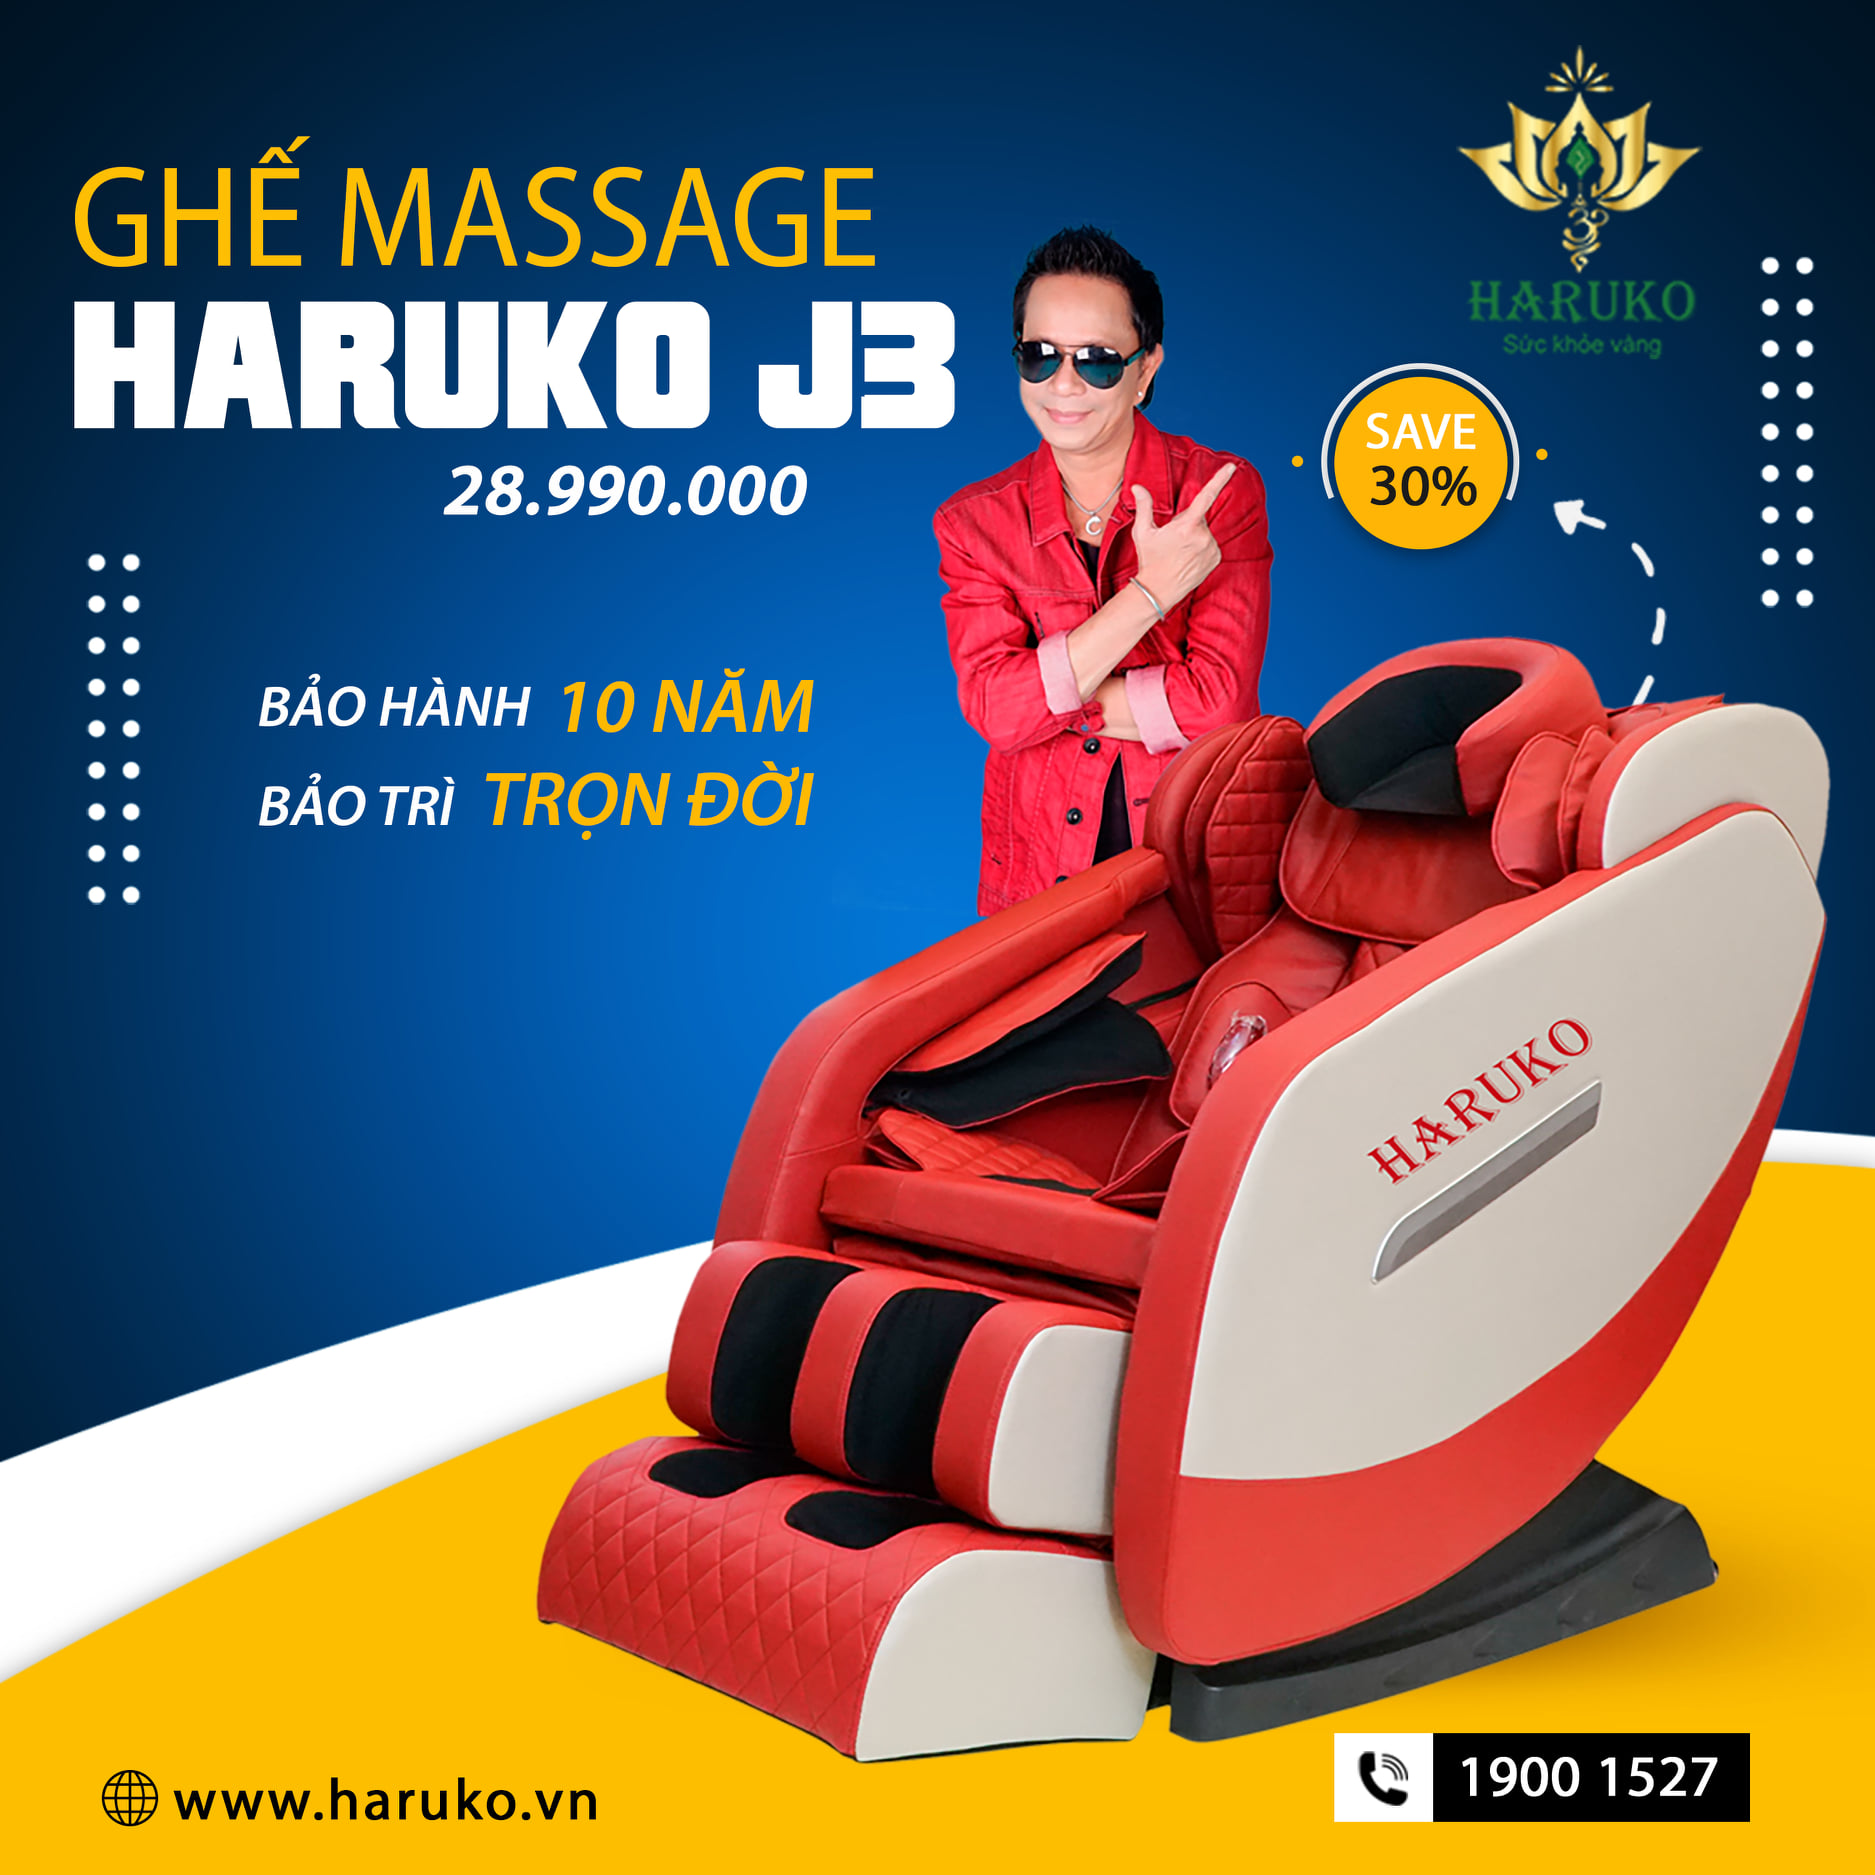 Ghế massage cao cấp Haruko đem tới cho bạn sản phẩm hiện đại đạt chuẩn quốc tế và dịch vụ hậu mãi tuyệt vời đối với mọi khách hàng